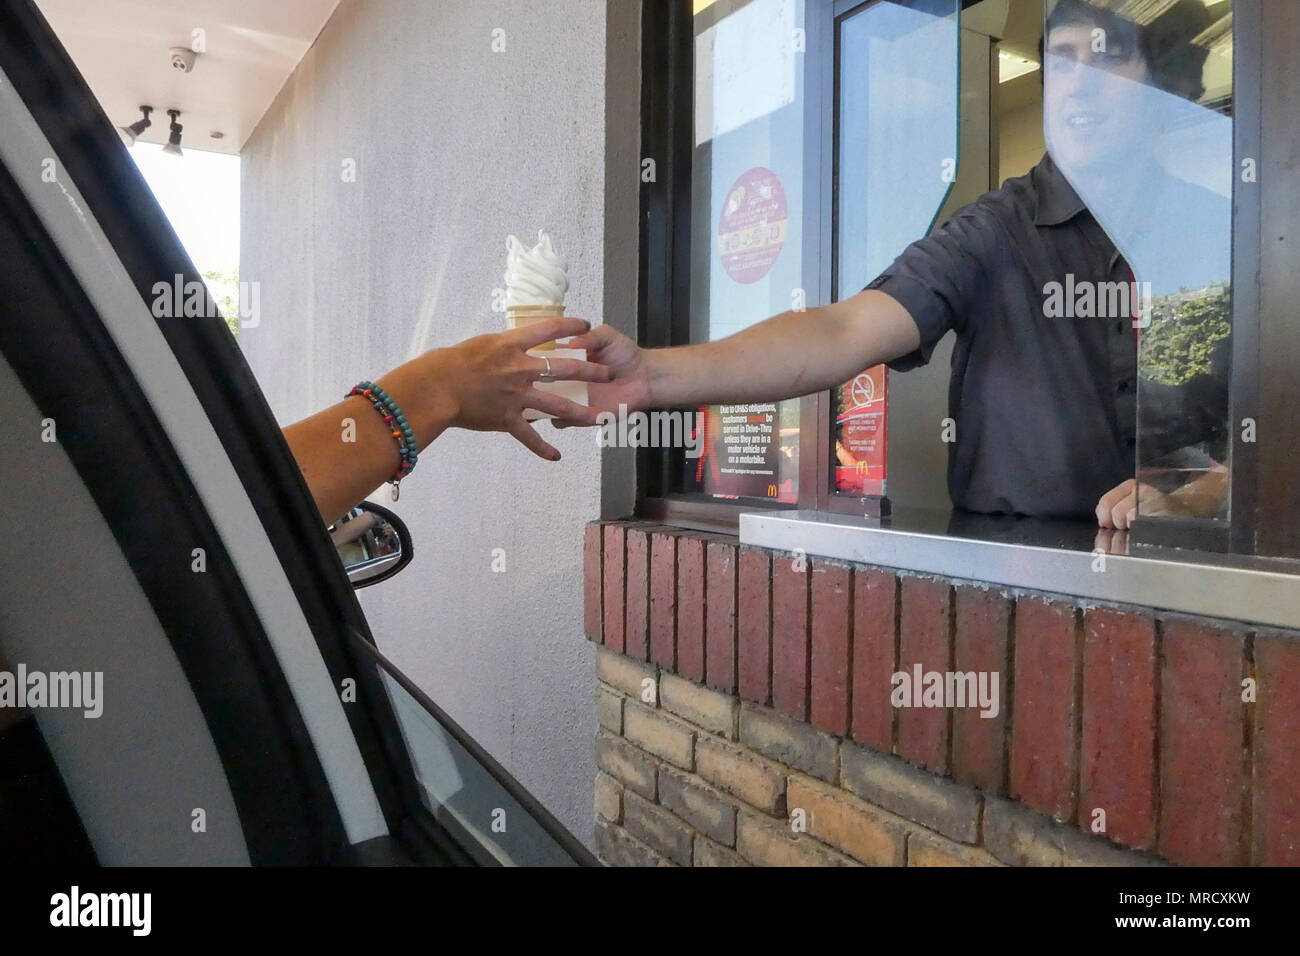 Melbourne, Australie : Mars 2017 : réception d'un client non identifié de glaces McFlurry dans un McDonald's à travers la fenêtre. Banque D'Images